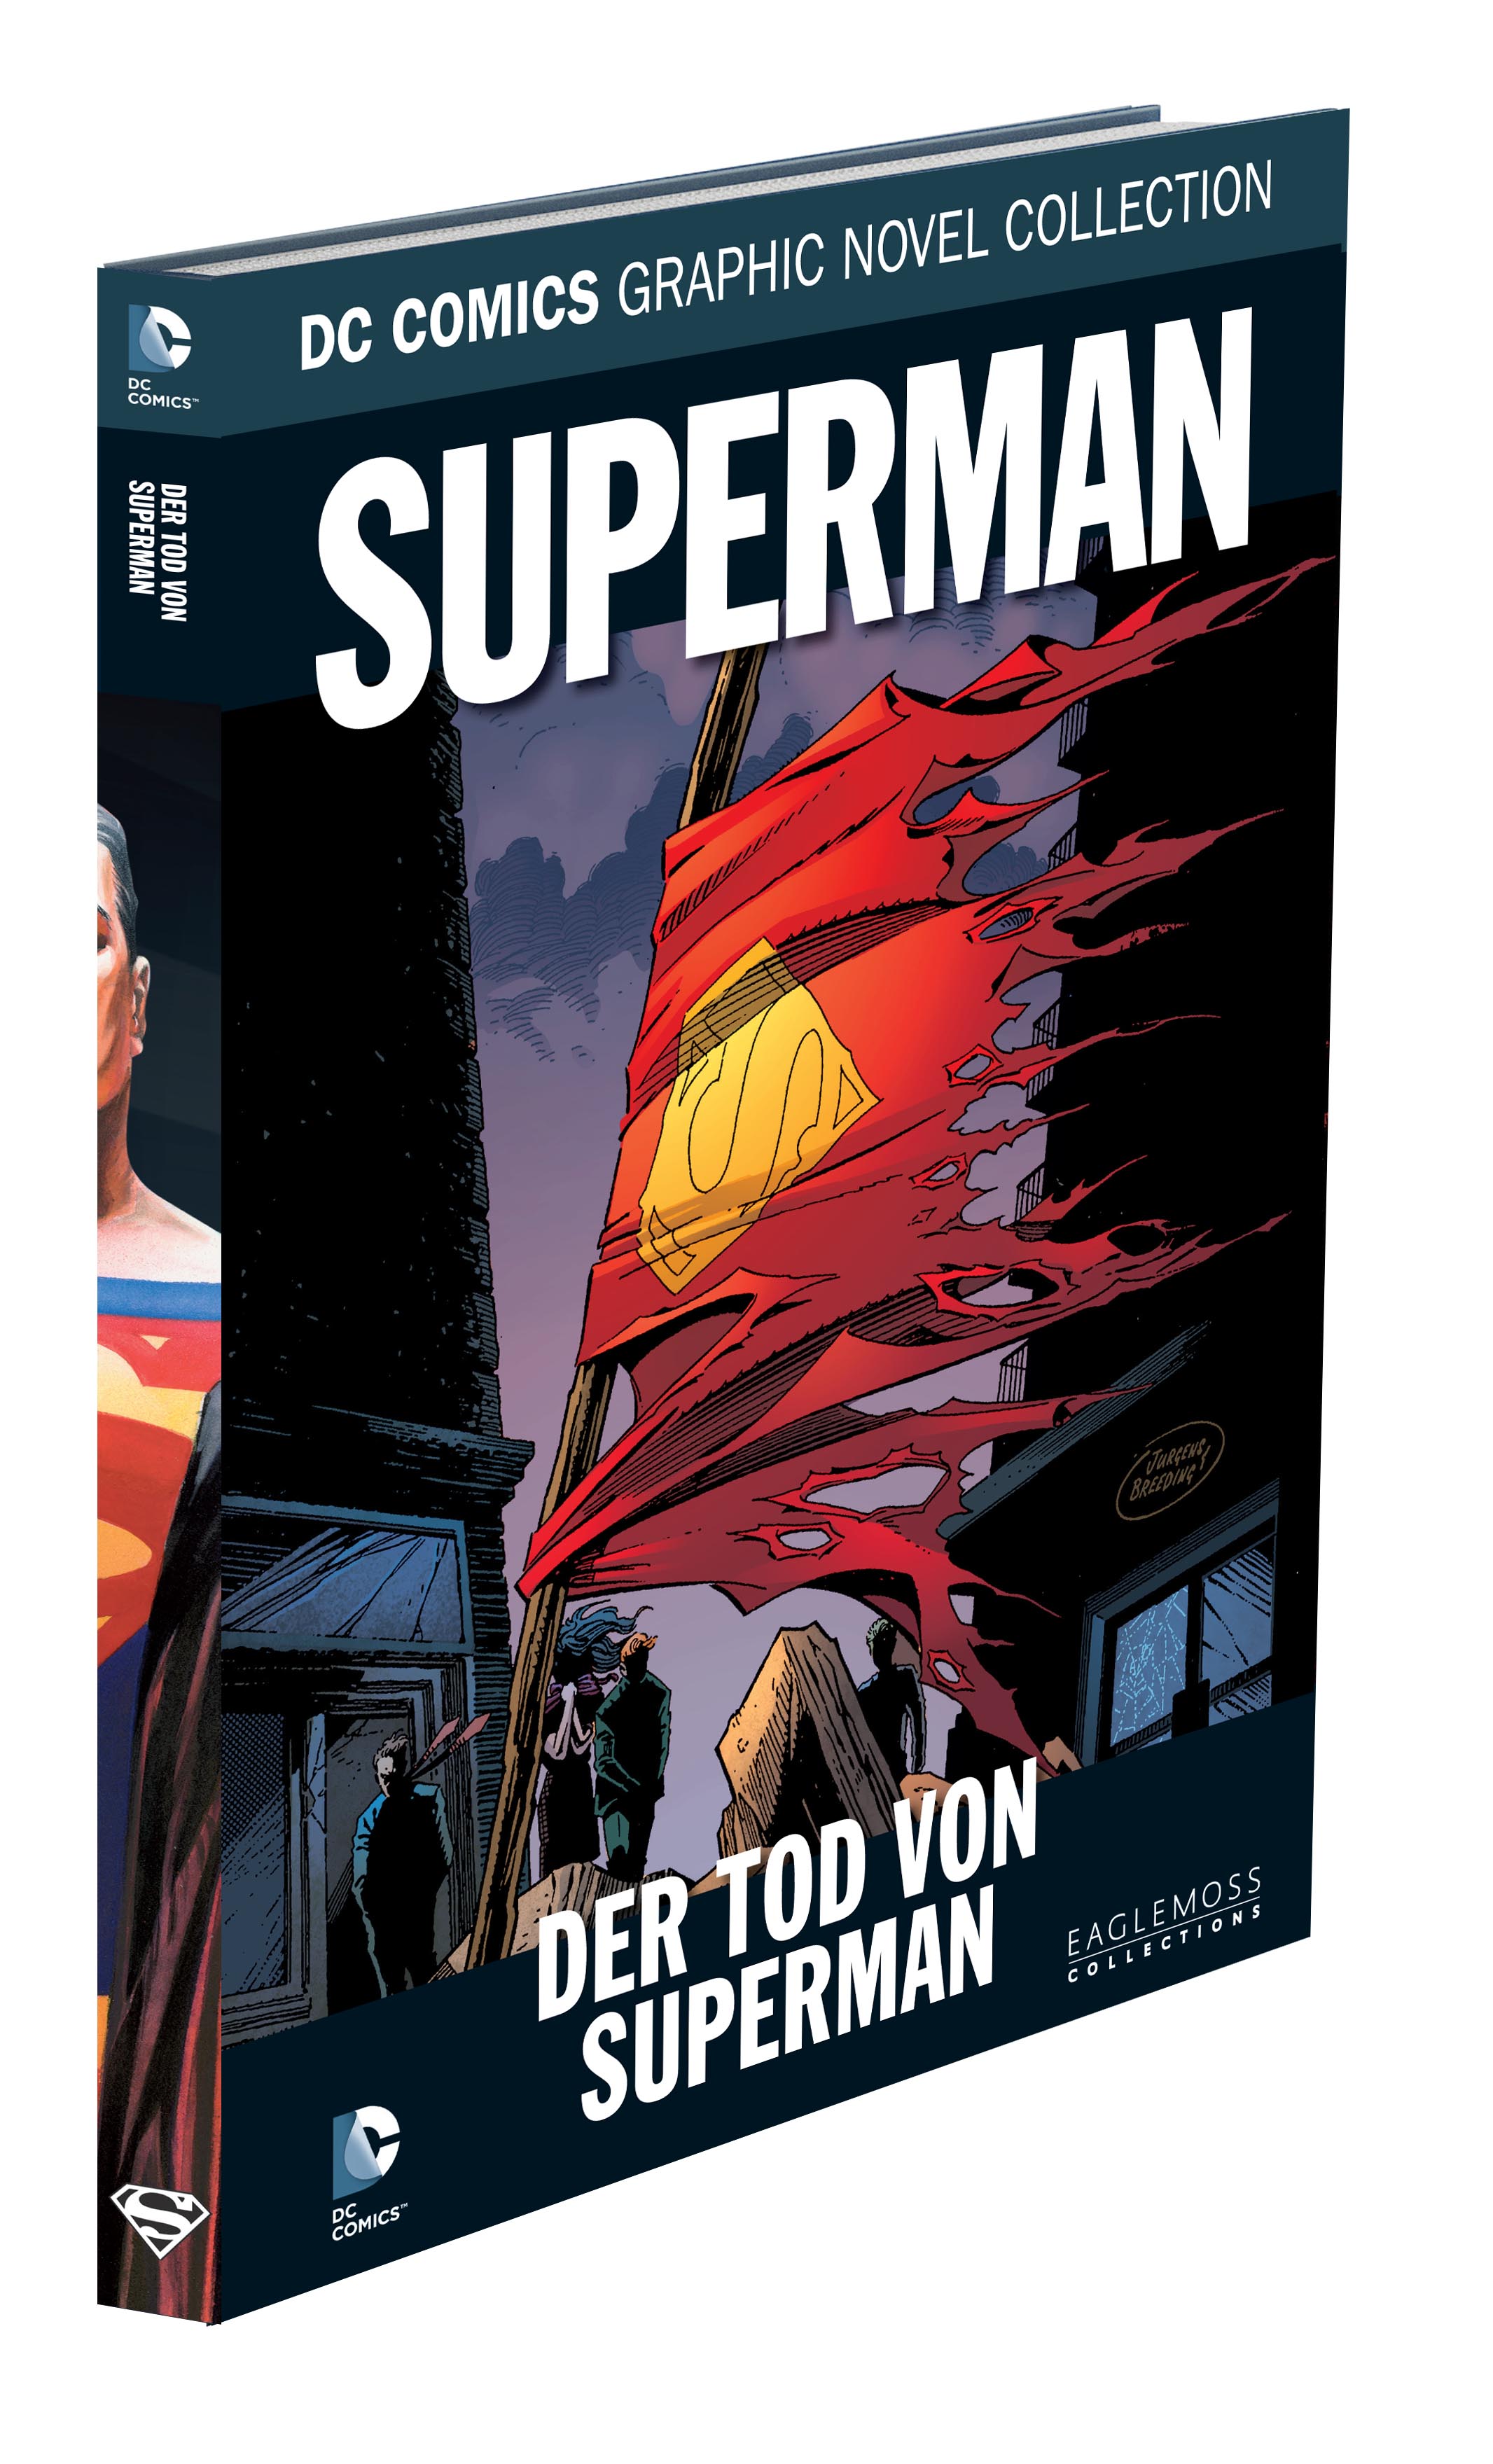 DC Comics Graphic Novel Collection Superman - Der Tod von Superman